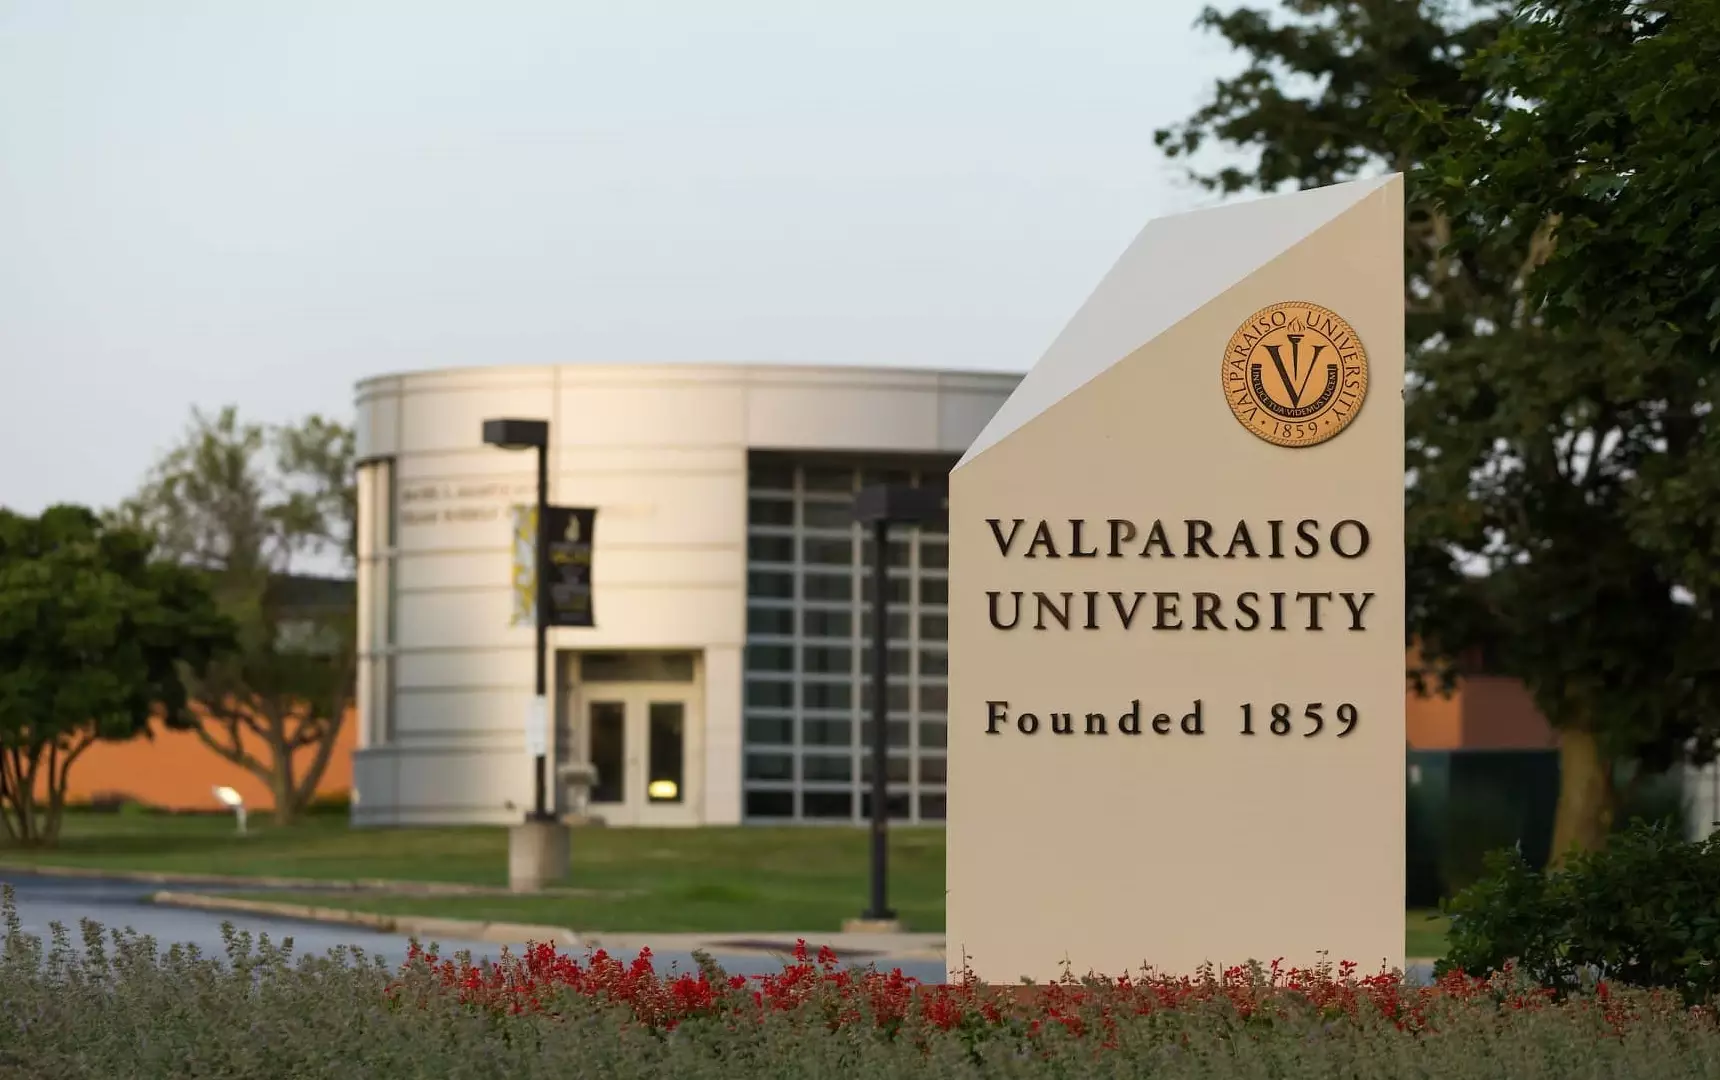 جامعة فالبارايسو Valparaiso University